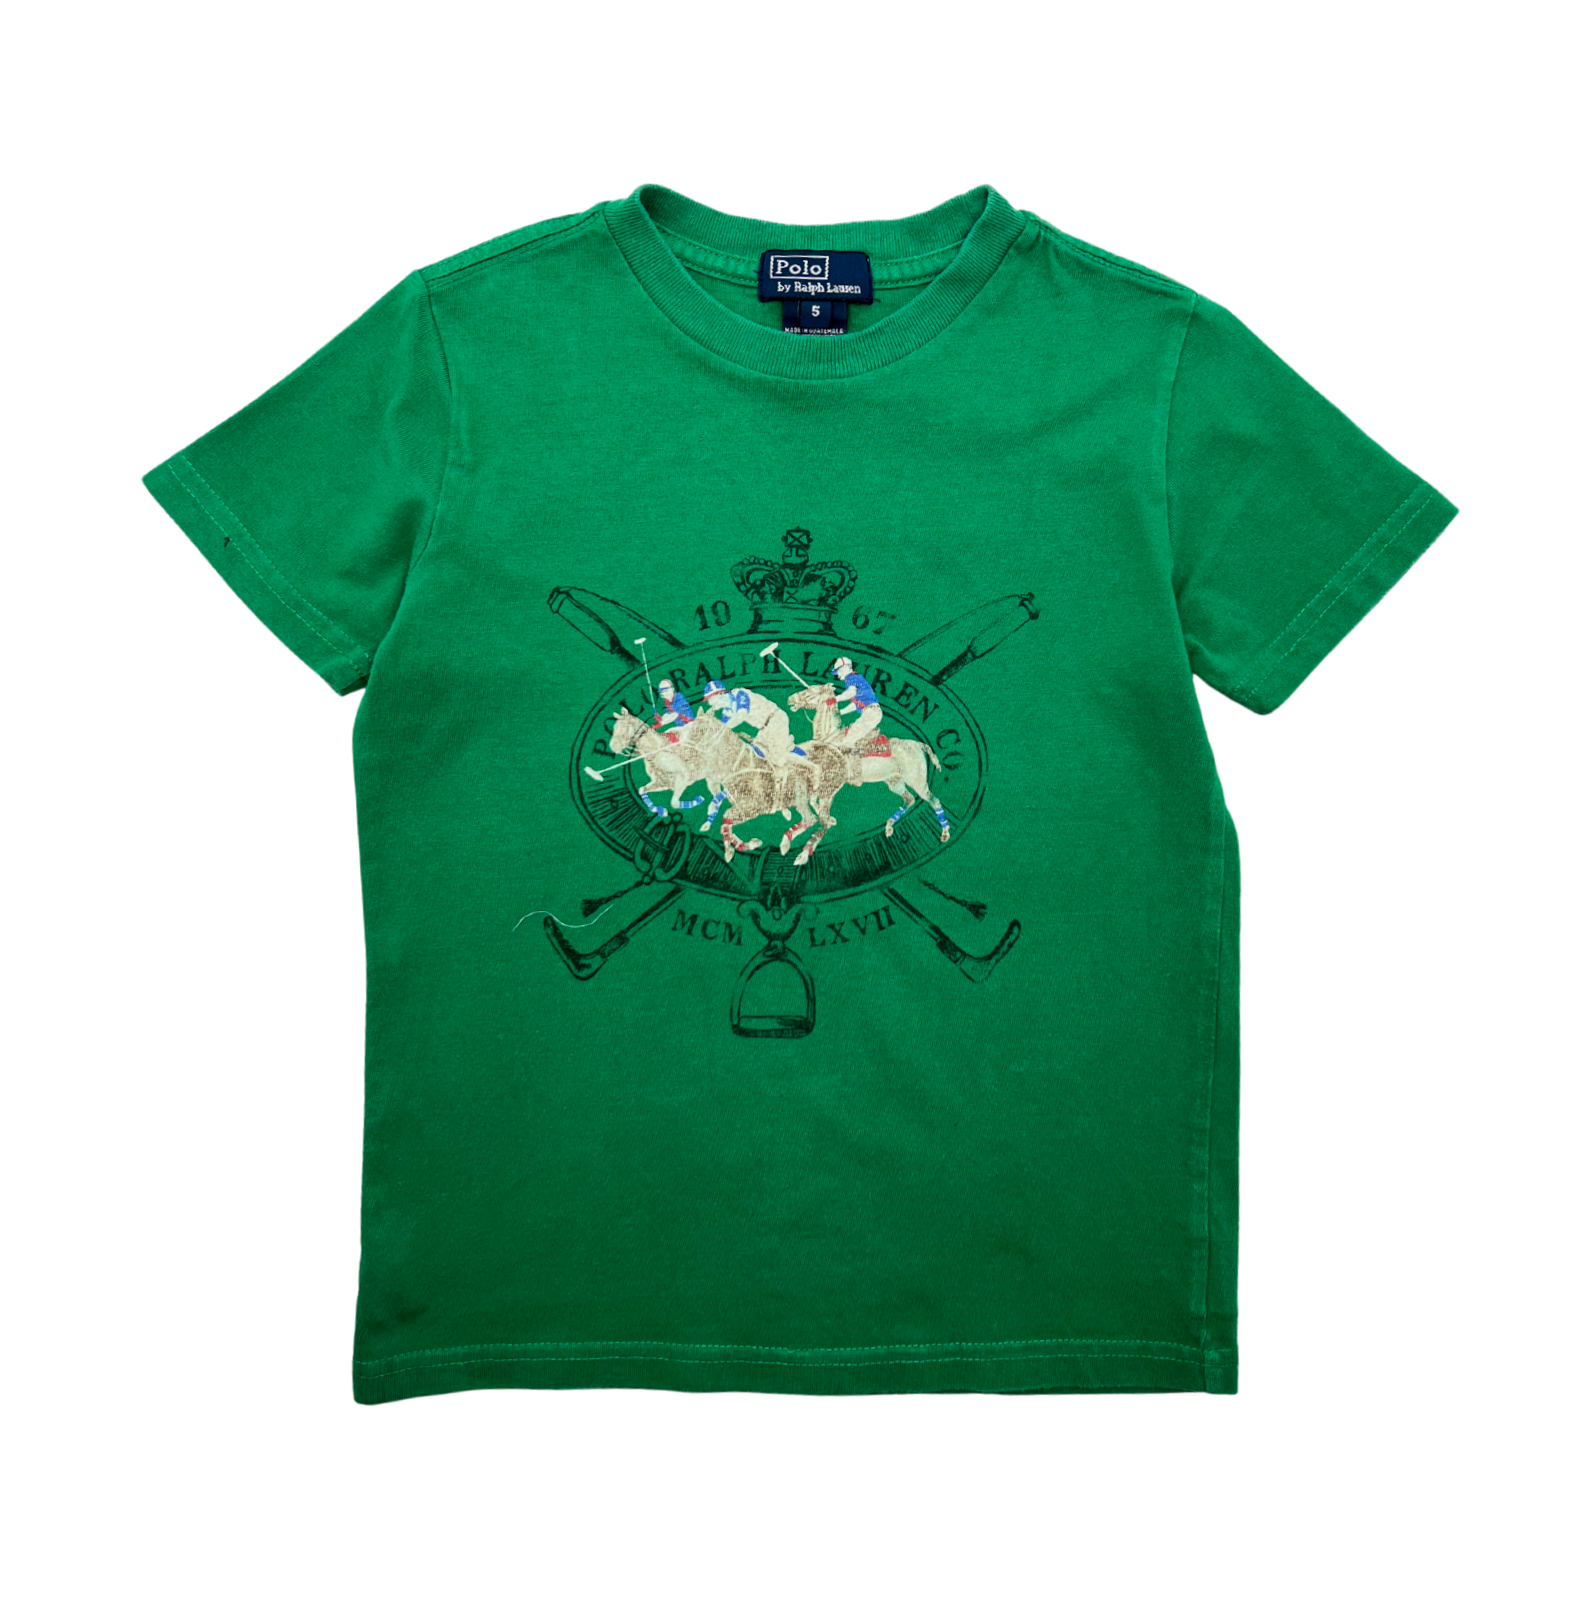 RALPH LAUREN - T-shirt vert - 5 ans